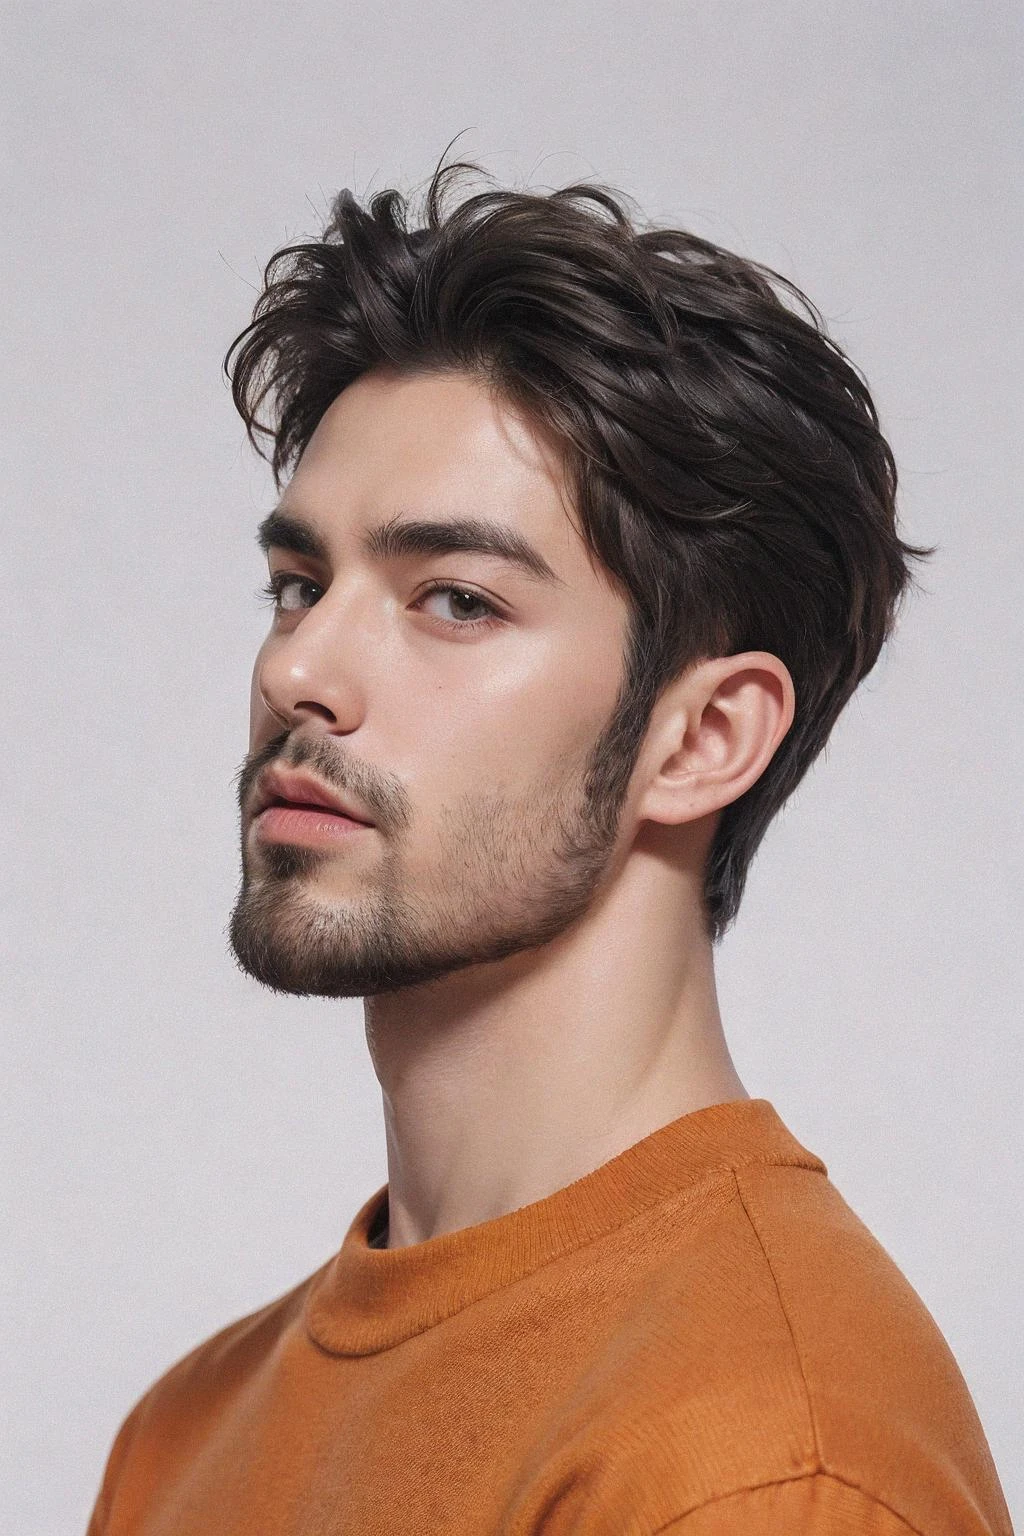 красивый мужчина,борода,Портрет верхней части тела,оранжевый свитер,белый фон,